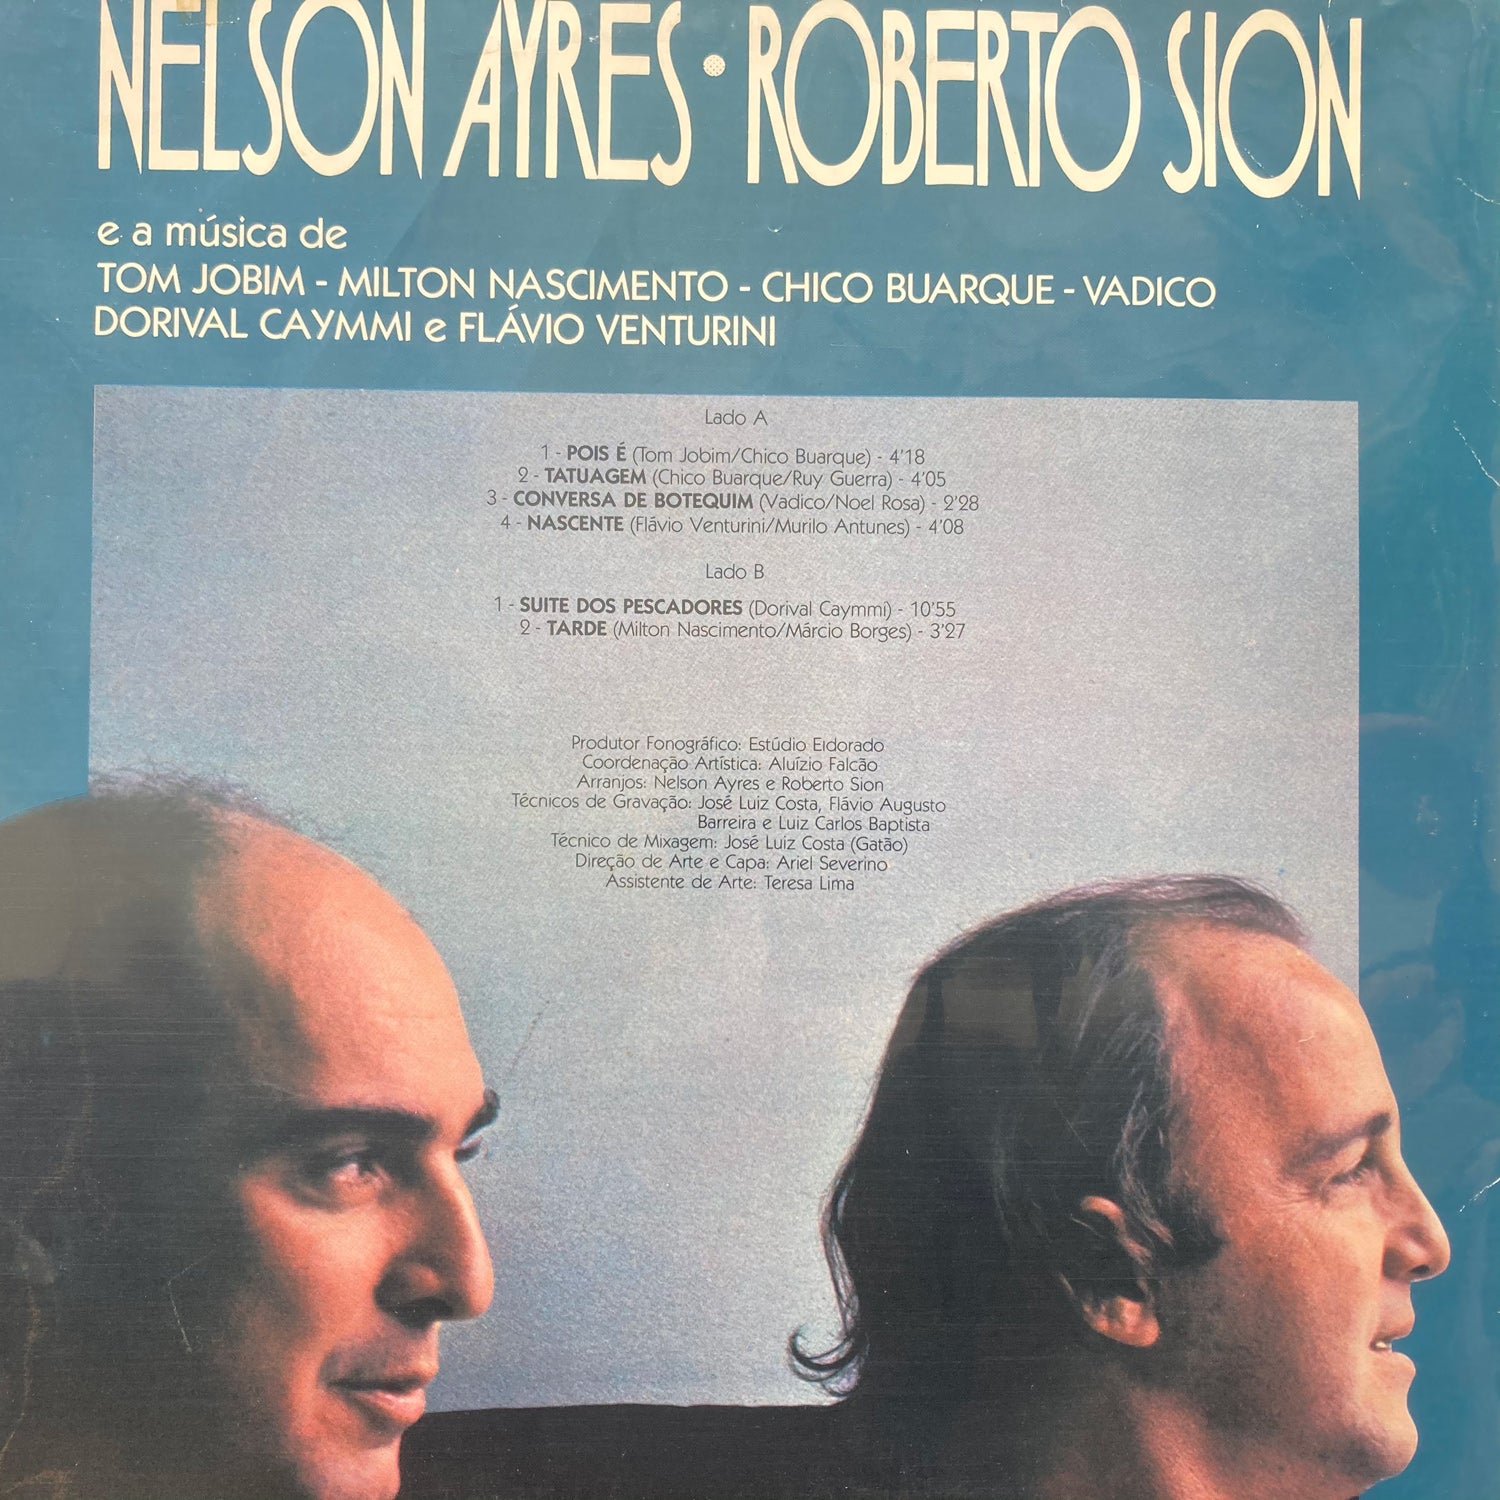 Roberto Sion & Nelson Ayres - e musica de